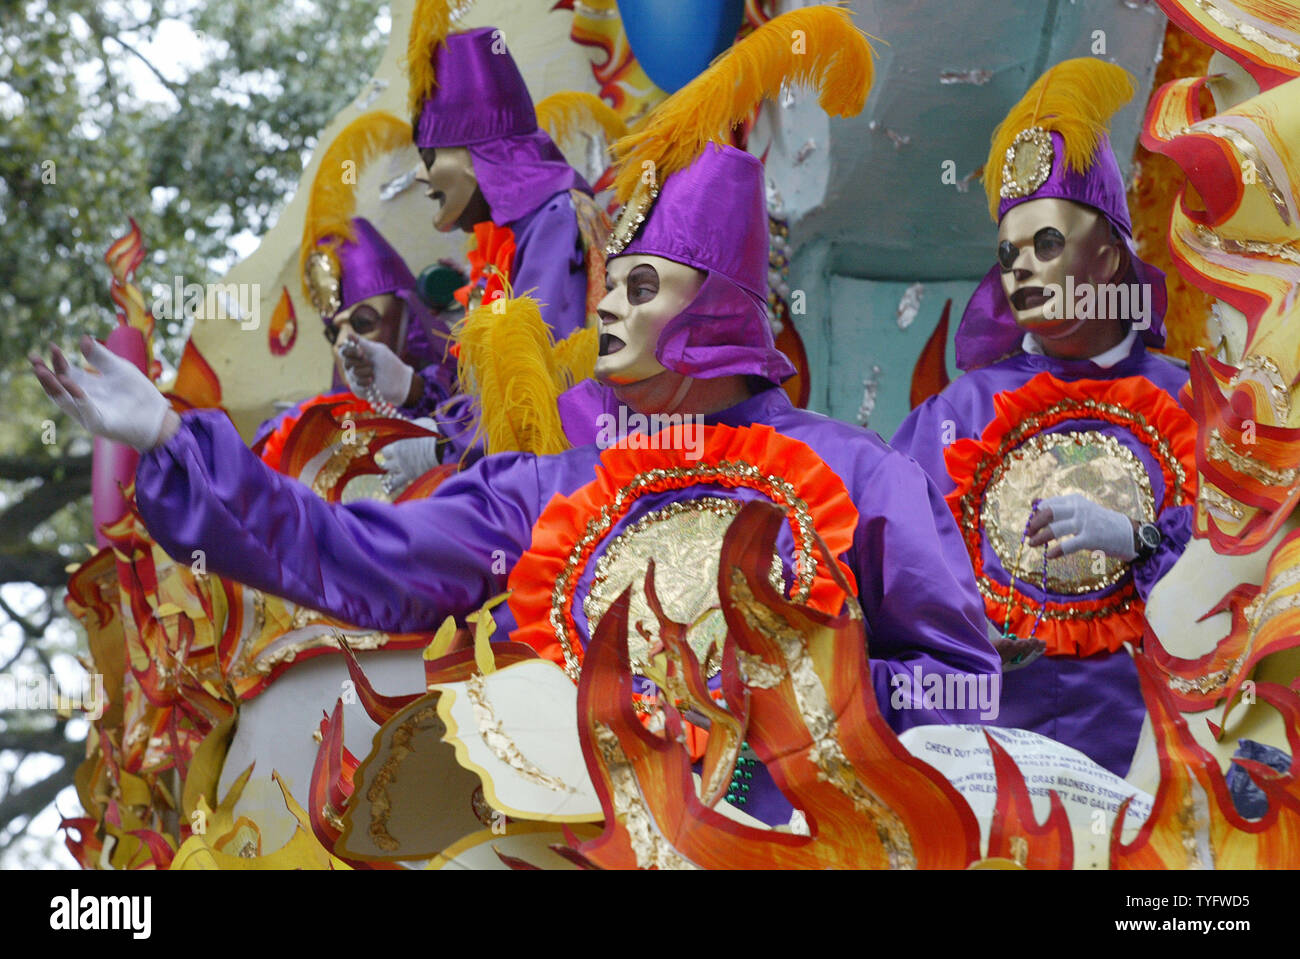 Maskierte Reiter auf der Rex-parade Perlen zu Zuschauer am Mardi Gras in New Orleans Februar 8, 2005 werfen. Tausende picnicked und feierte auf der Uptown Paradeweg Paraden am letzten Tag zu beobachten vor der Fastenzeit. (UPI Foto/A.J. Sisco) Stockfoto